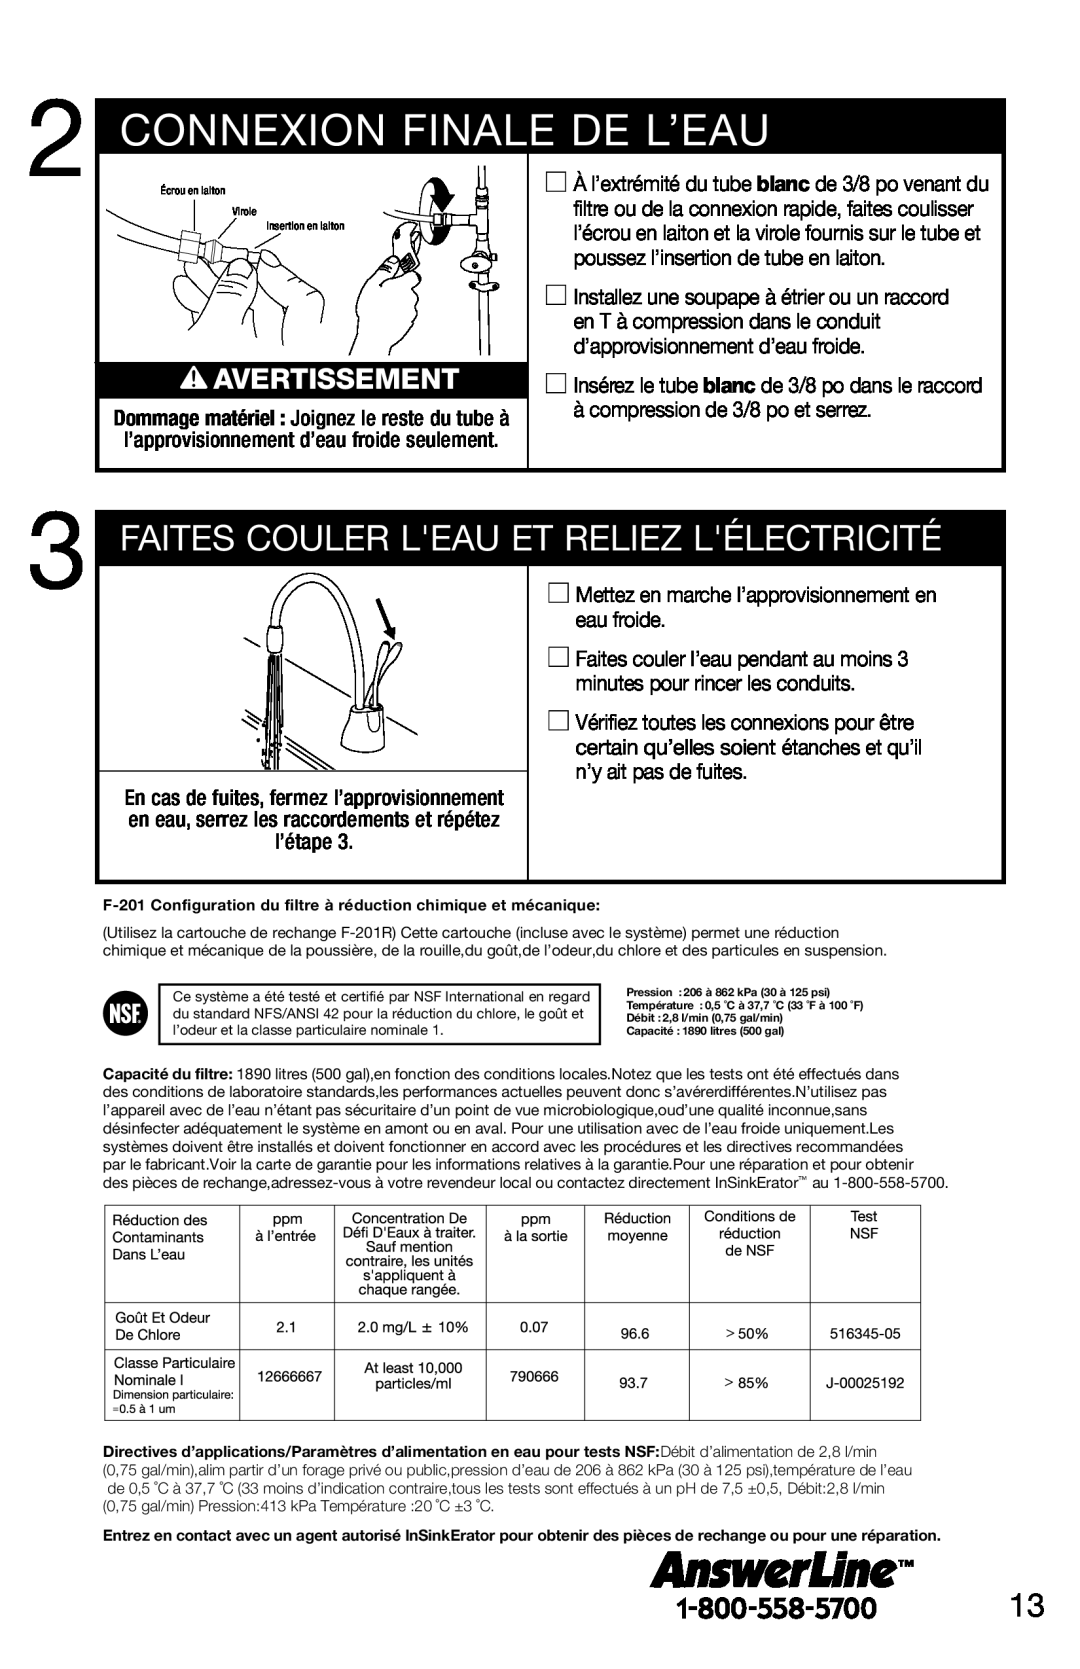 InSinkErator F-201R Connexion Finale De L’Eau, Faites Couler Leau Et Reliez Lélectricité, Avertissement 